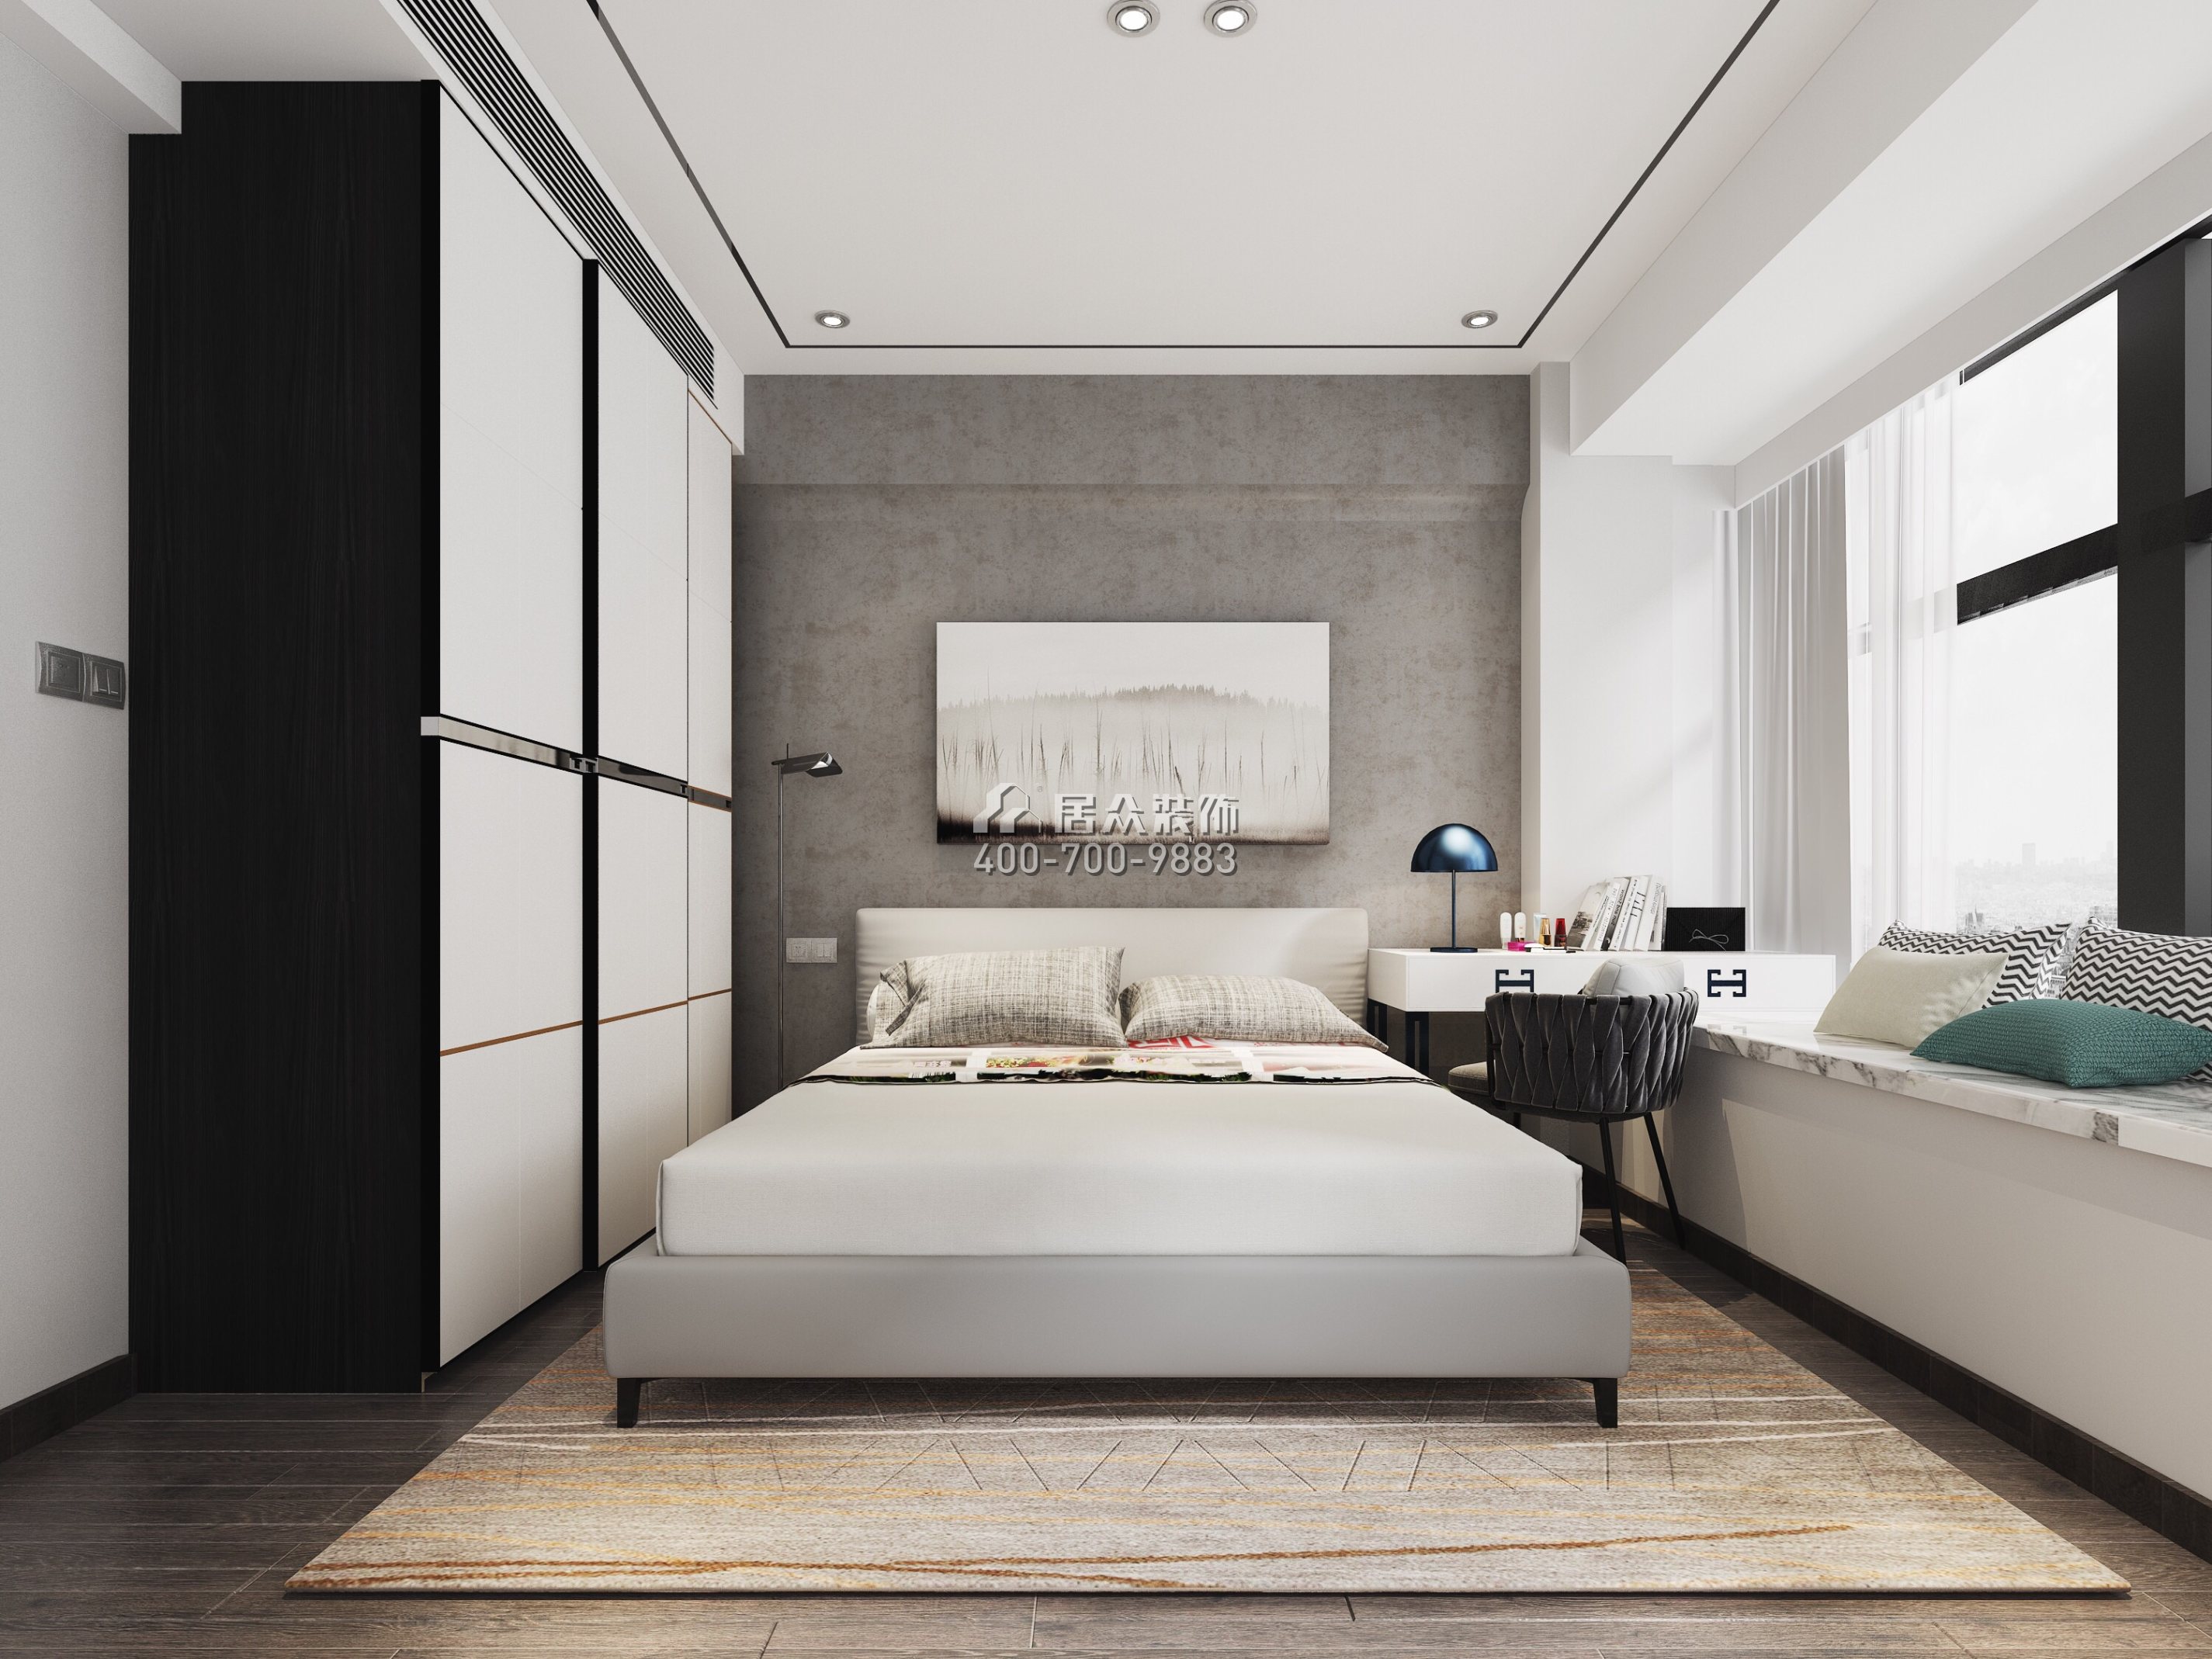 碧海君庭88平方米现代简约风格平层户型卧室装修效果图